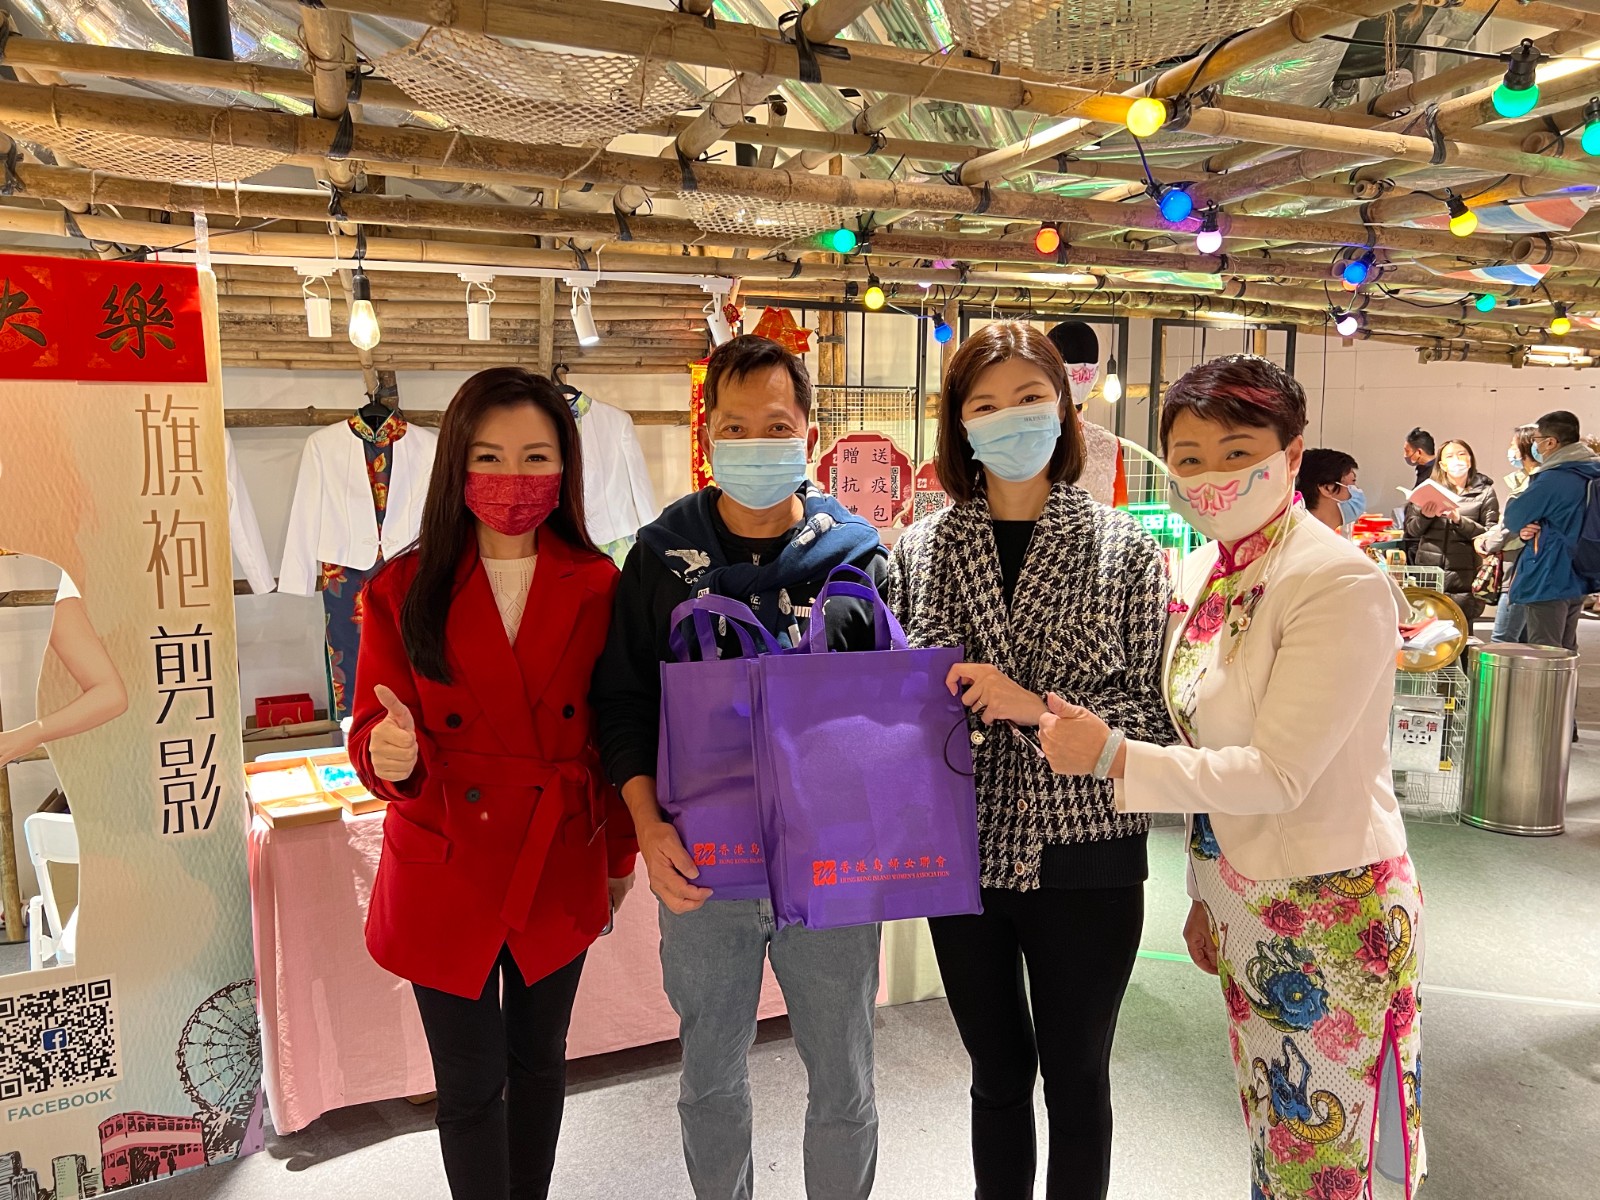 香港島婦女聯會一連三日在社區派發快速測試套裝及抗疫福袋-7